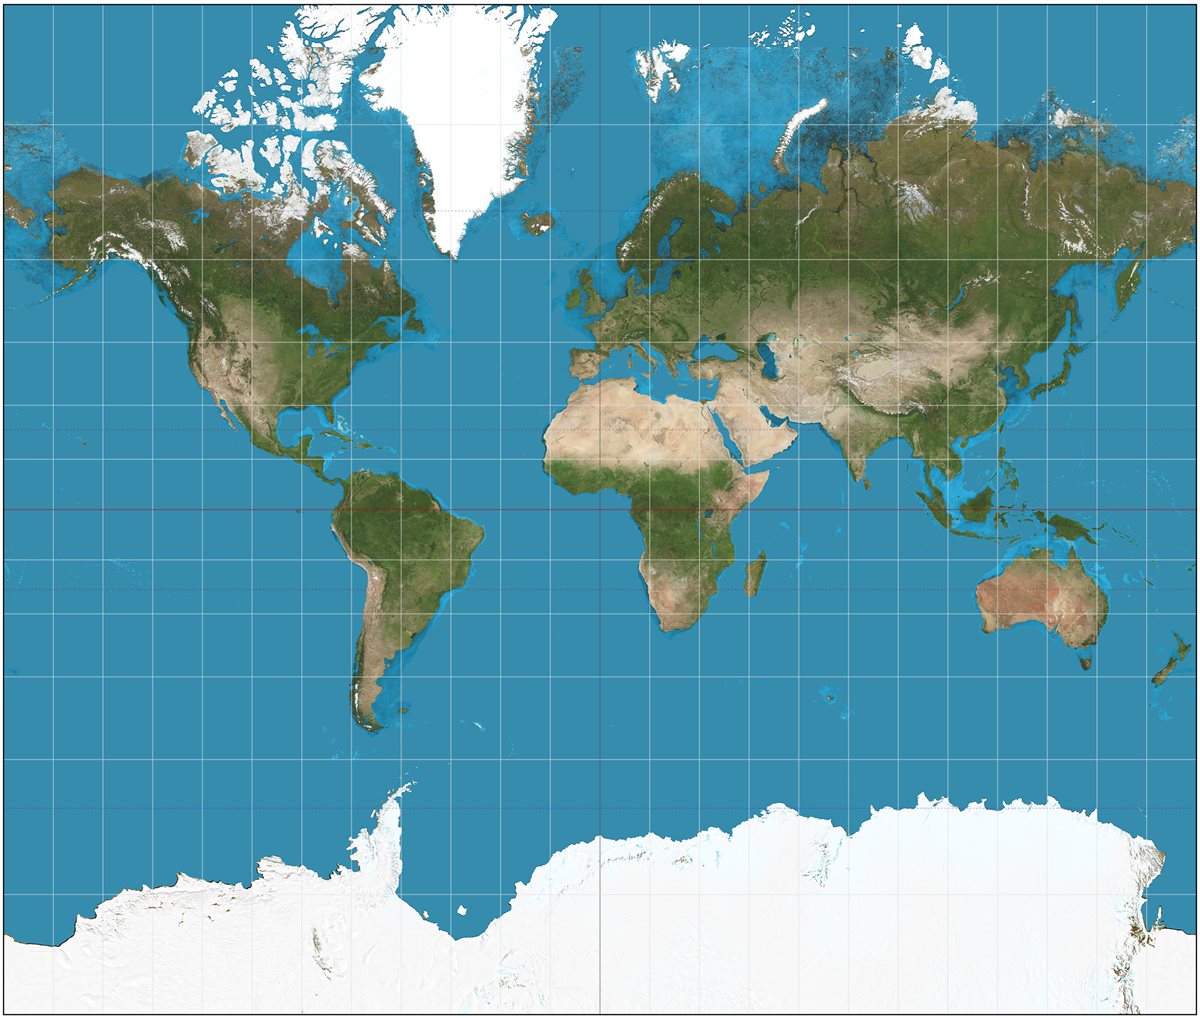 <span style="font-size: 11.9999990463257px;">Muchos de los mapas actuales, como el de la imagen, están basados en las proyecciones de Mercator; tienen muchas desproporciones.</span>